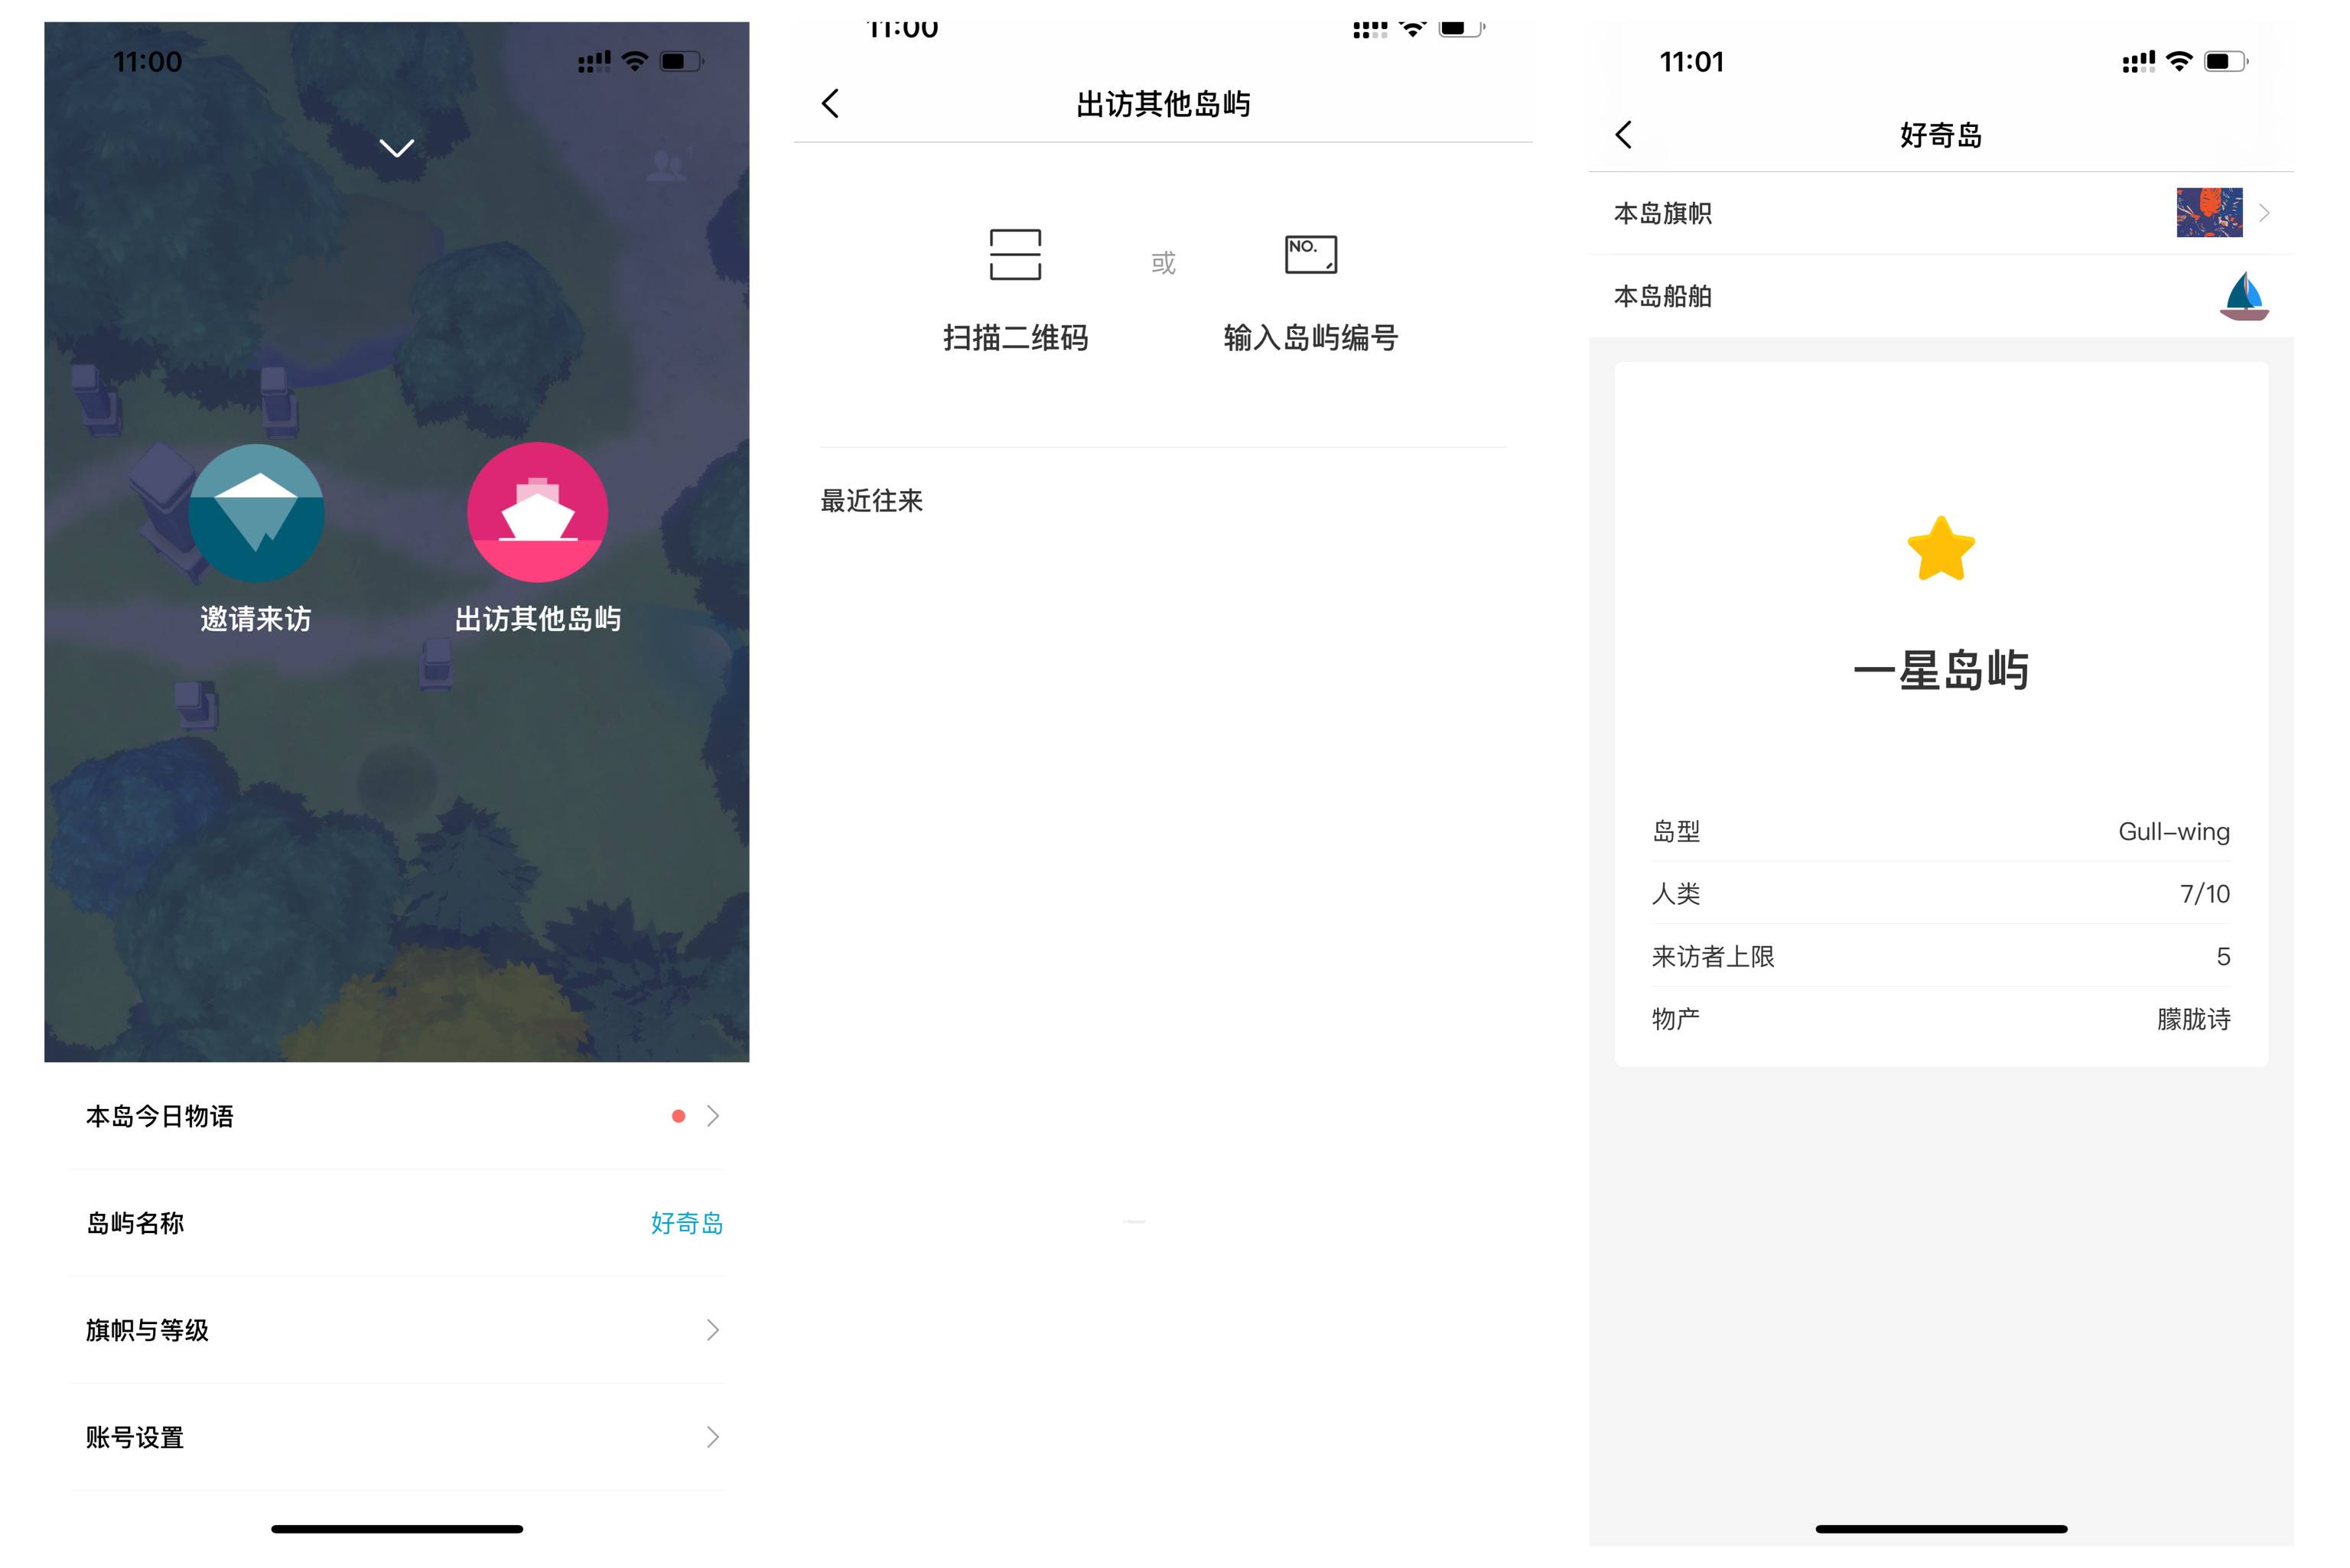 IMG 5646 - Un’app che non è umana tranne te, un’isola che sovverte ogni forma di interazione sociale｜Intervista al CEO di Xiaobing Li Di